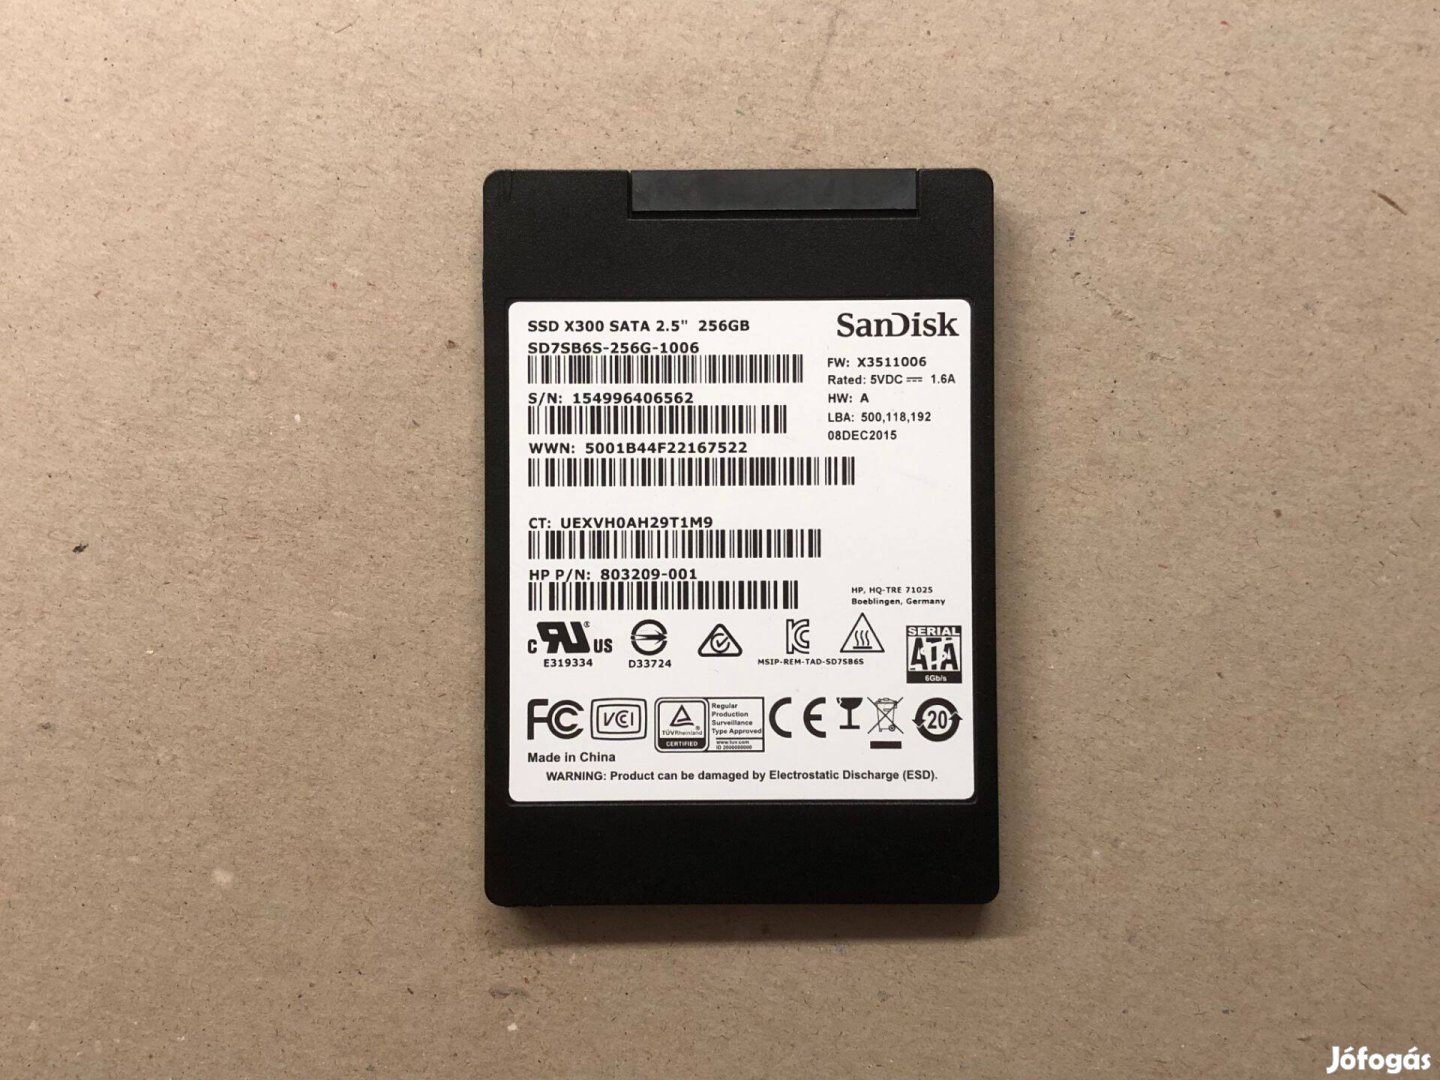 Sandisk X300 256GB 2.5" SATA3 SSD